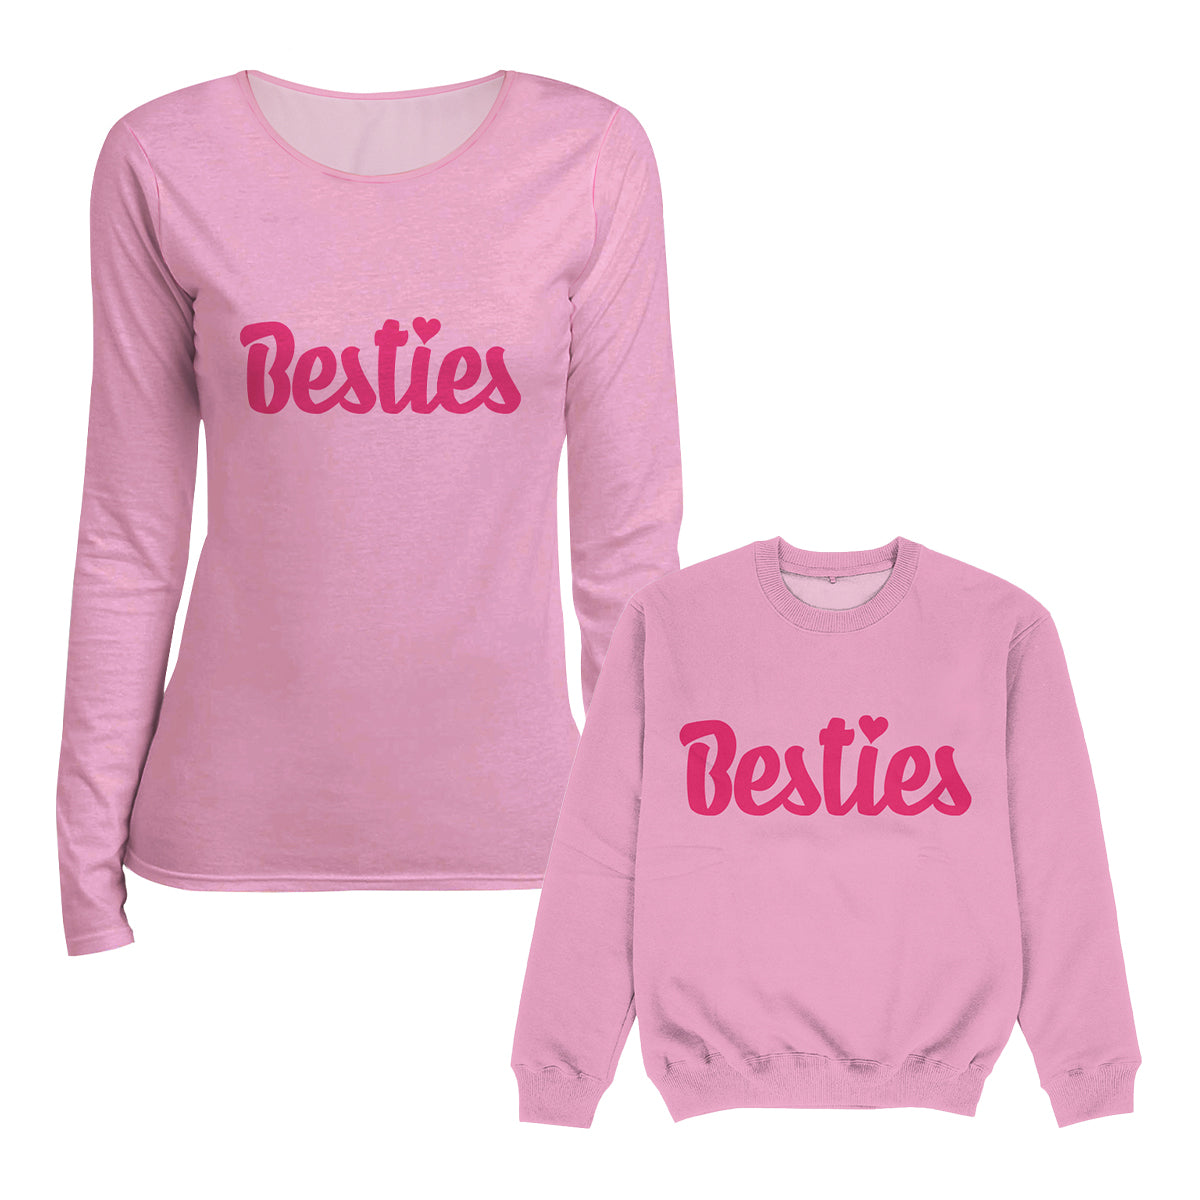 Besties Pink Crewneck Sweatshirt - Wimziy&Co.